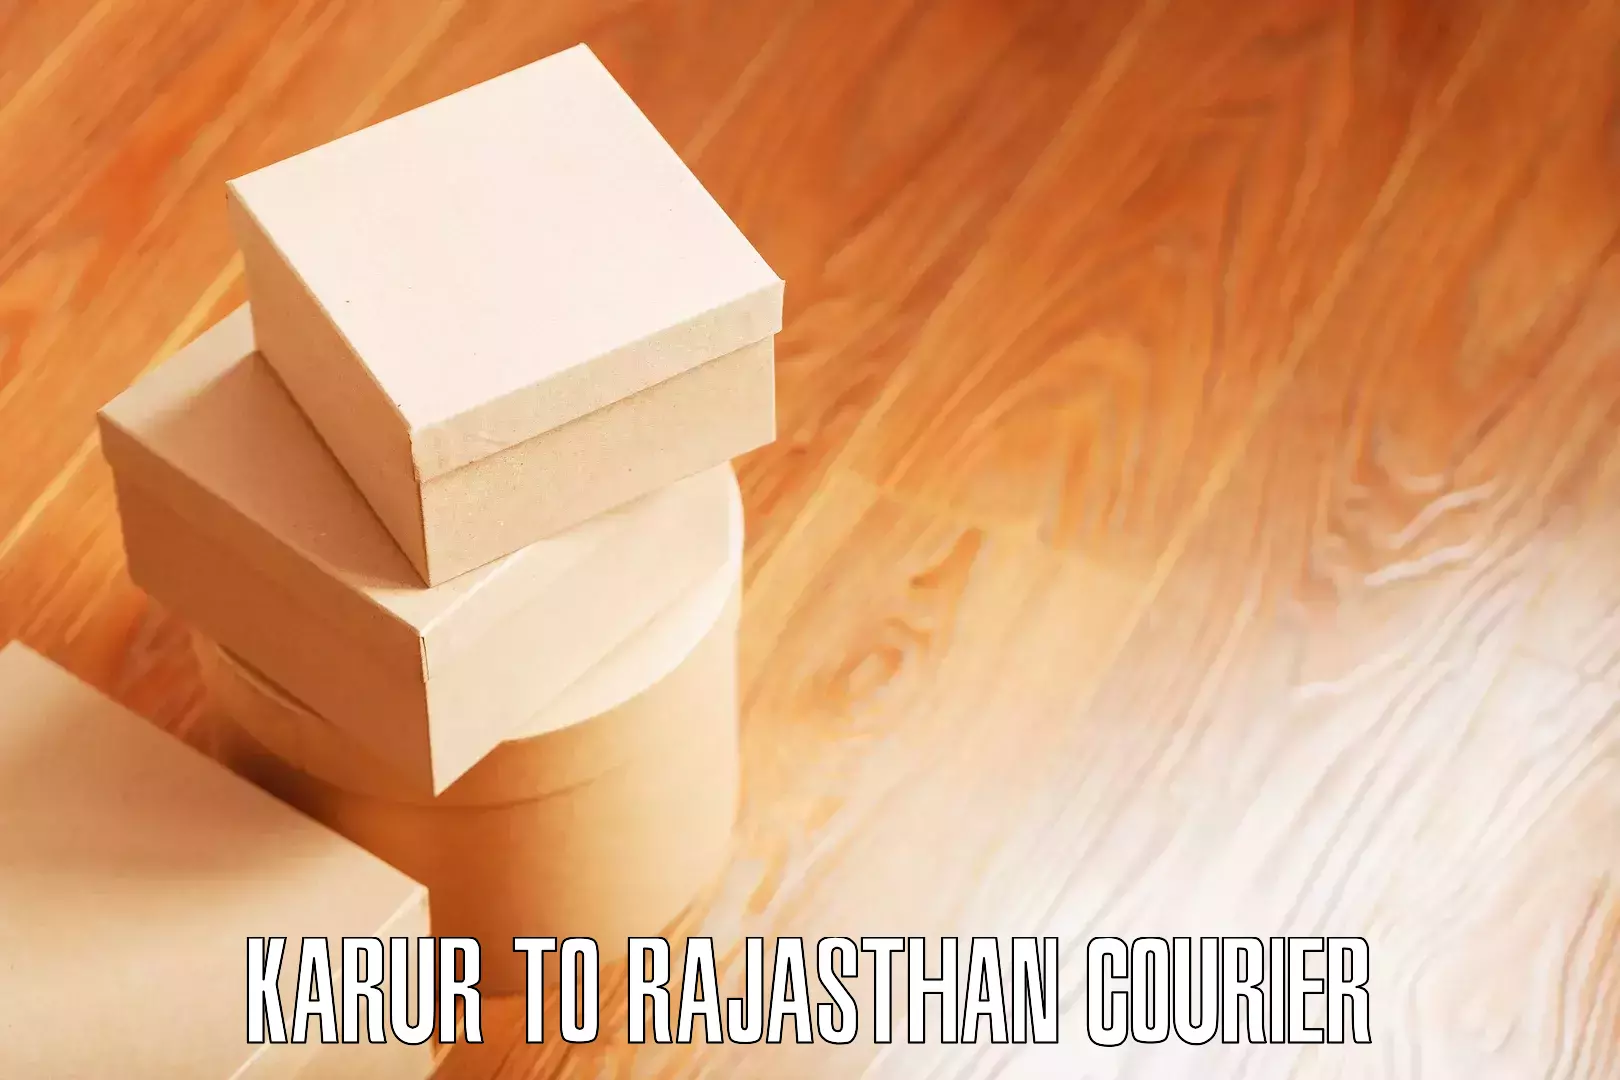 Furniture moving experts Karur to Rajasthan